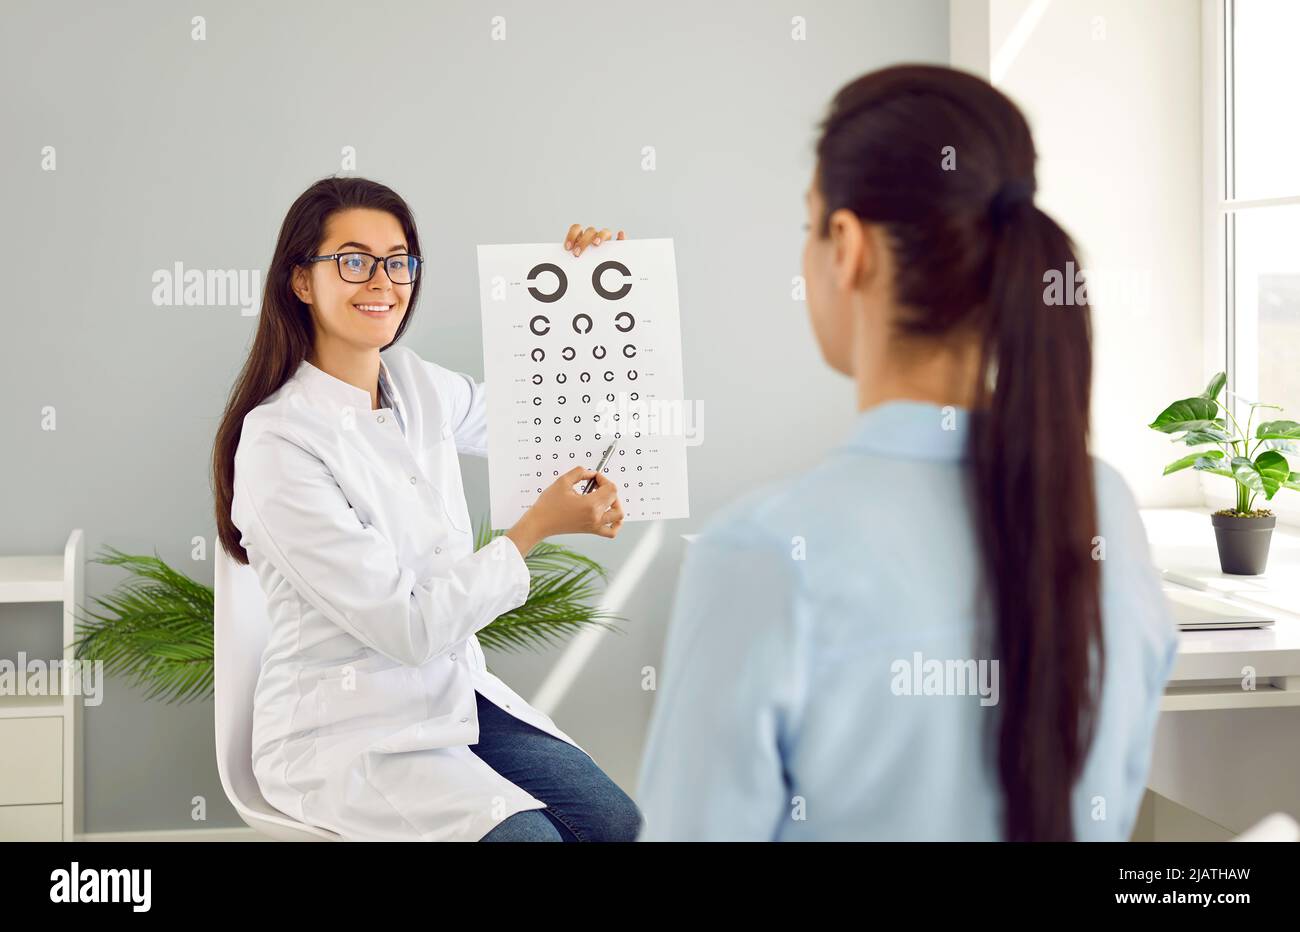 Ophtalmologiste avec l'aide de la carte de test oculaire sur laquelle montre des lettres vérifie la vision de la patiente. Banque D'Images